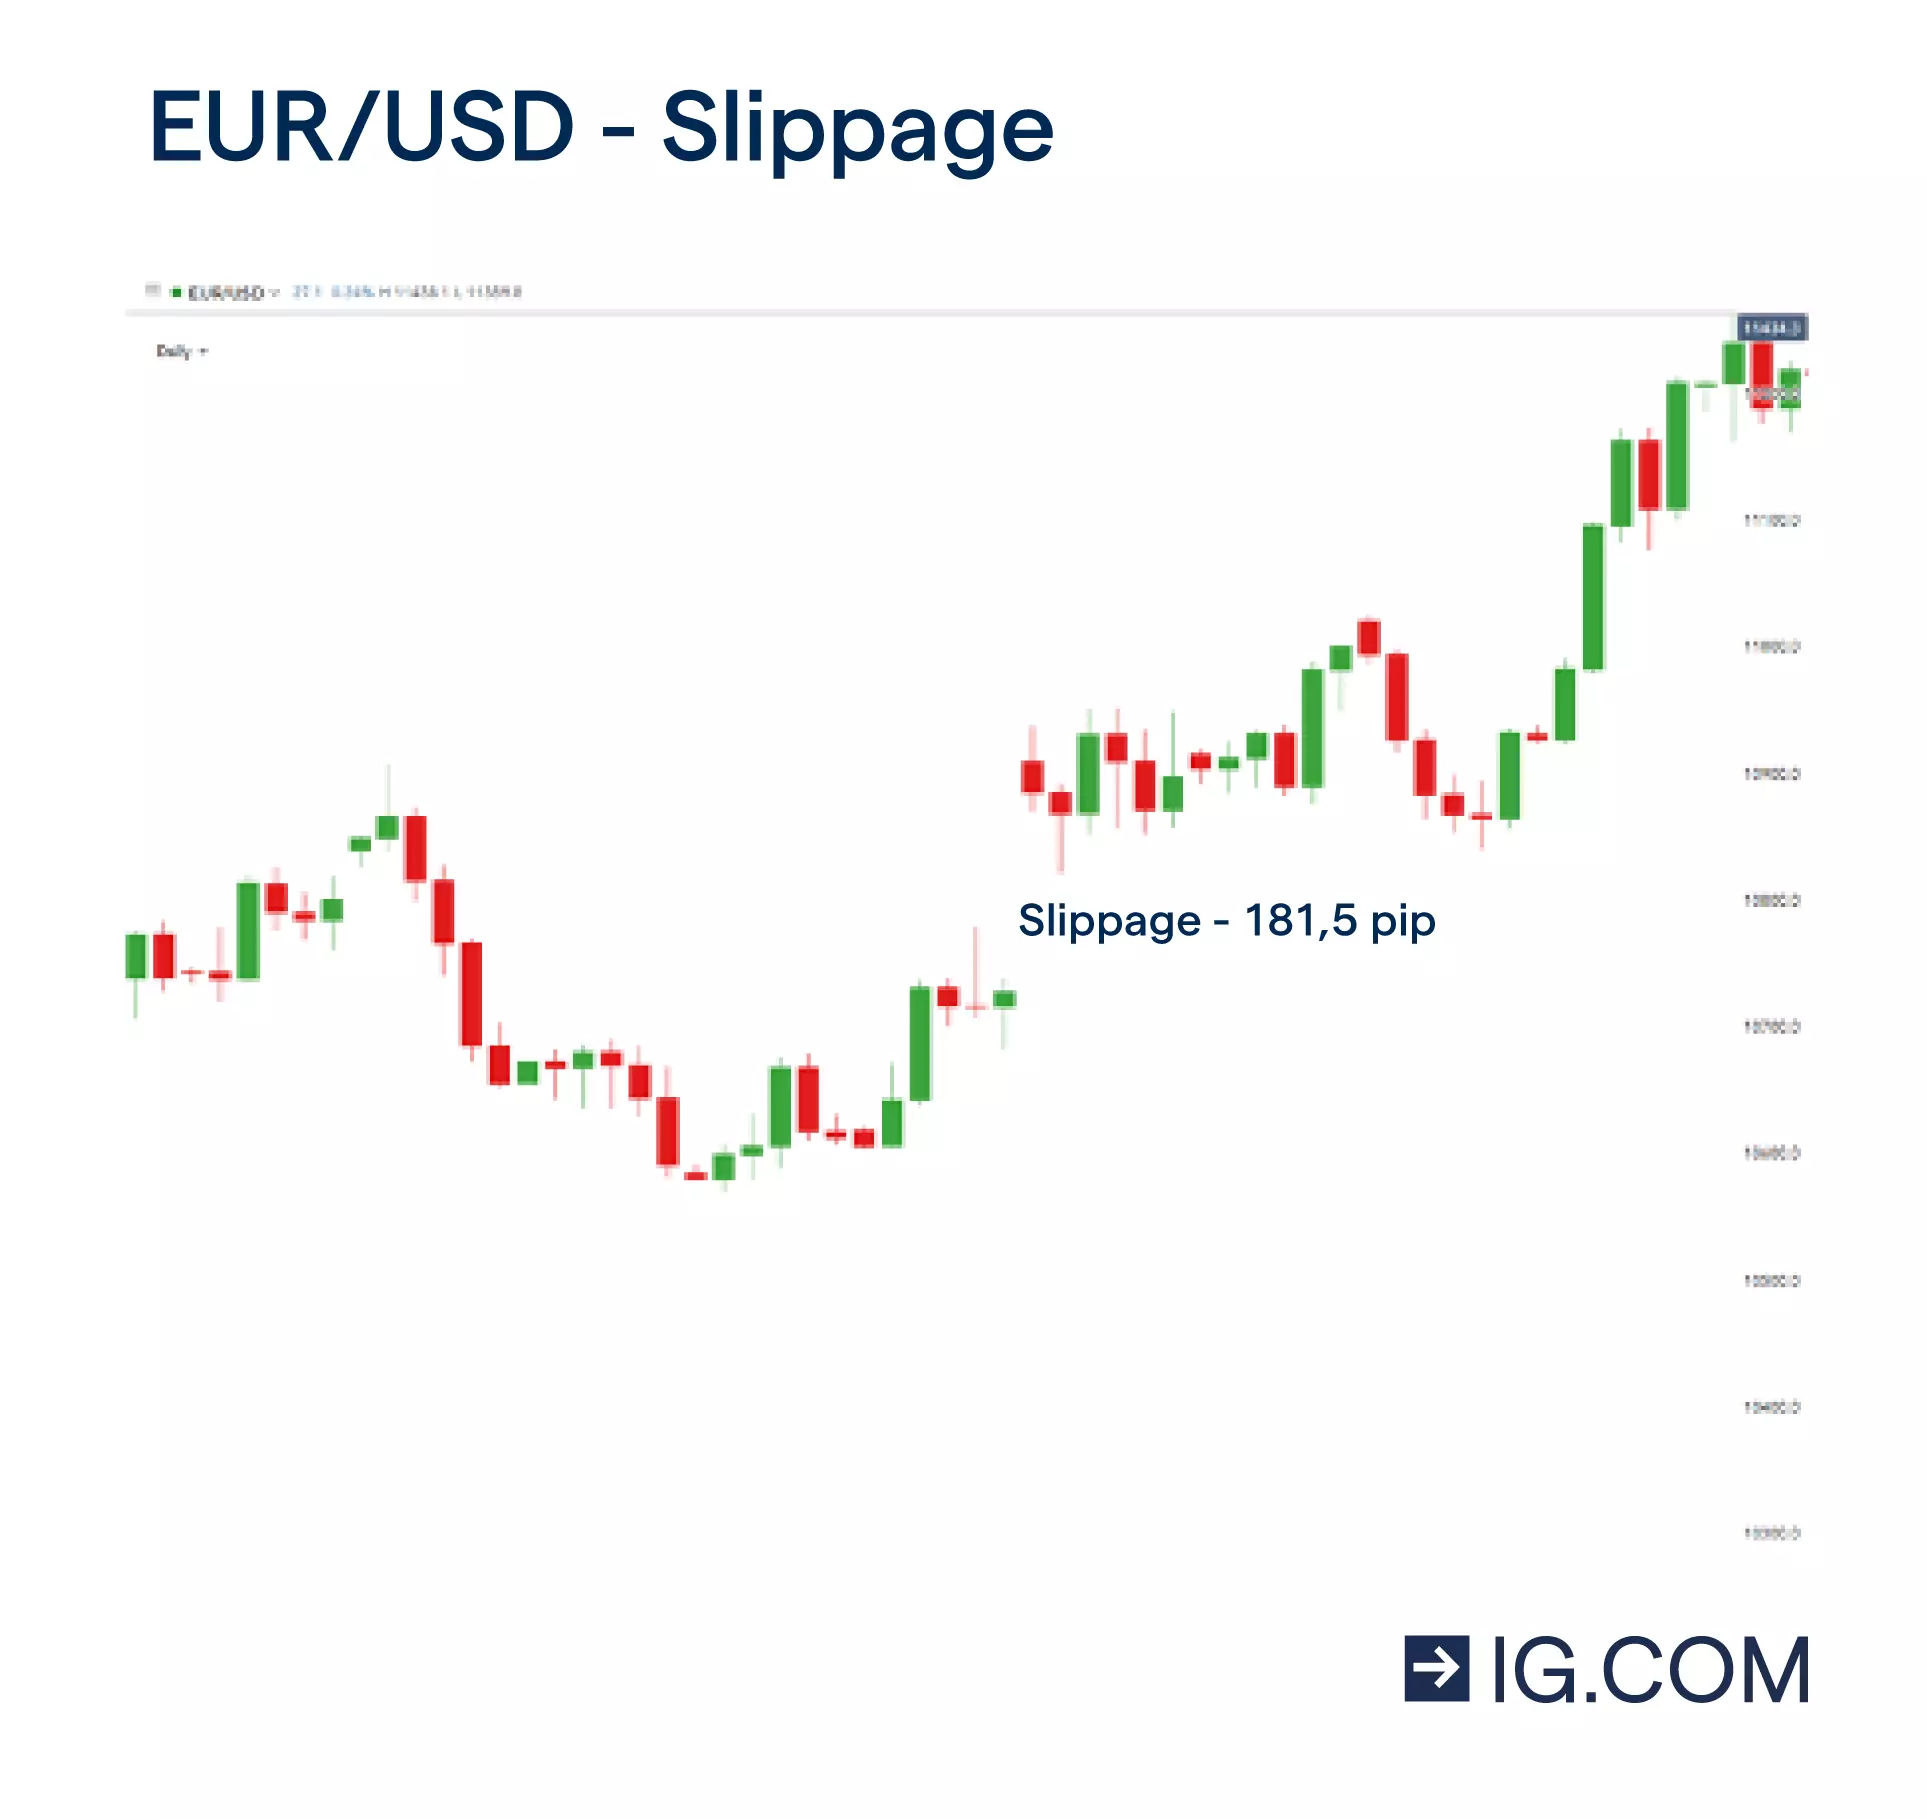 Il grafico EUR/USD mostra un gap tra le candele che indica uno slippage di 181,5 pip.